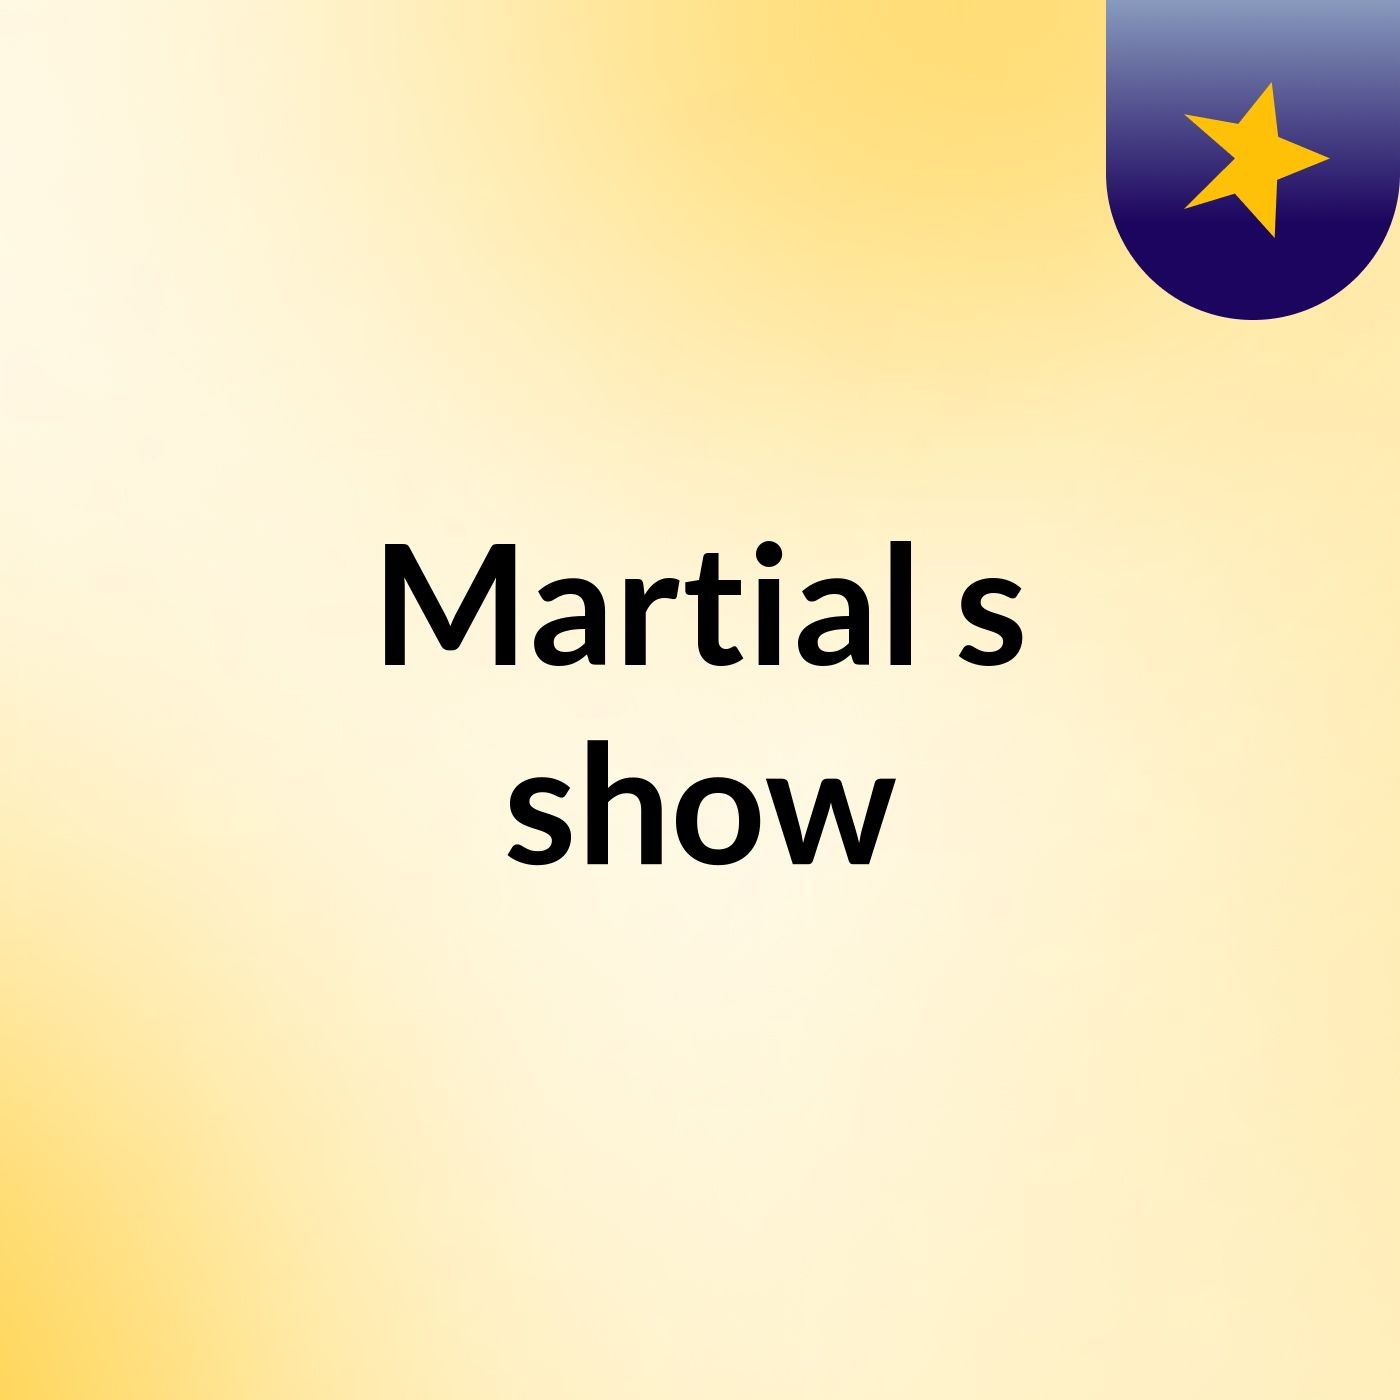 Martial's show